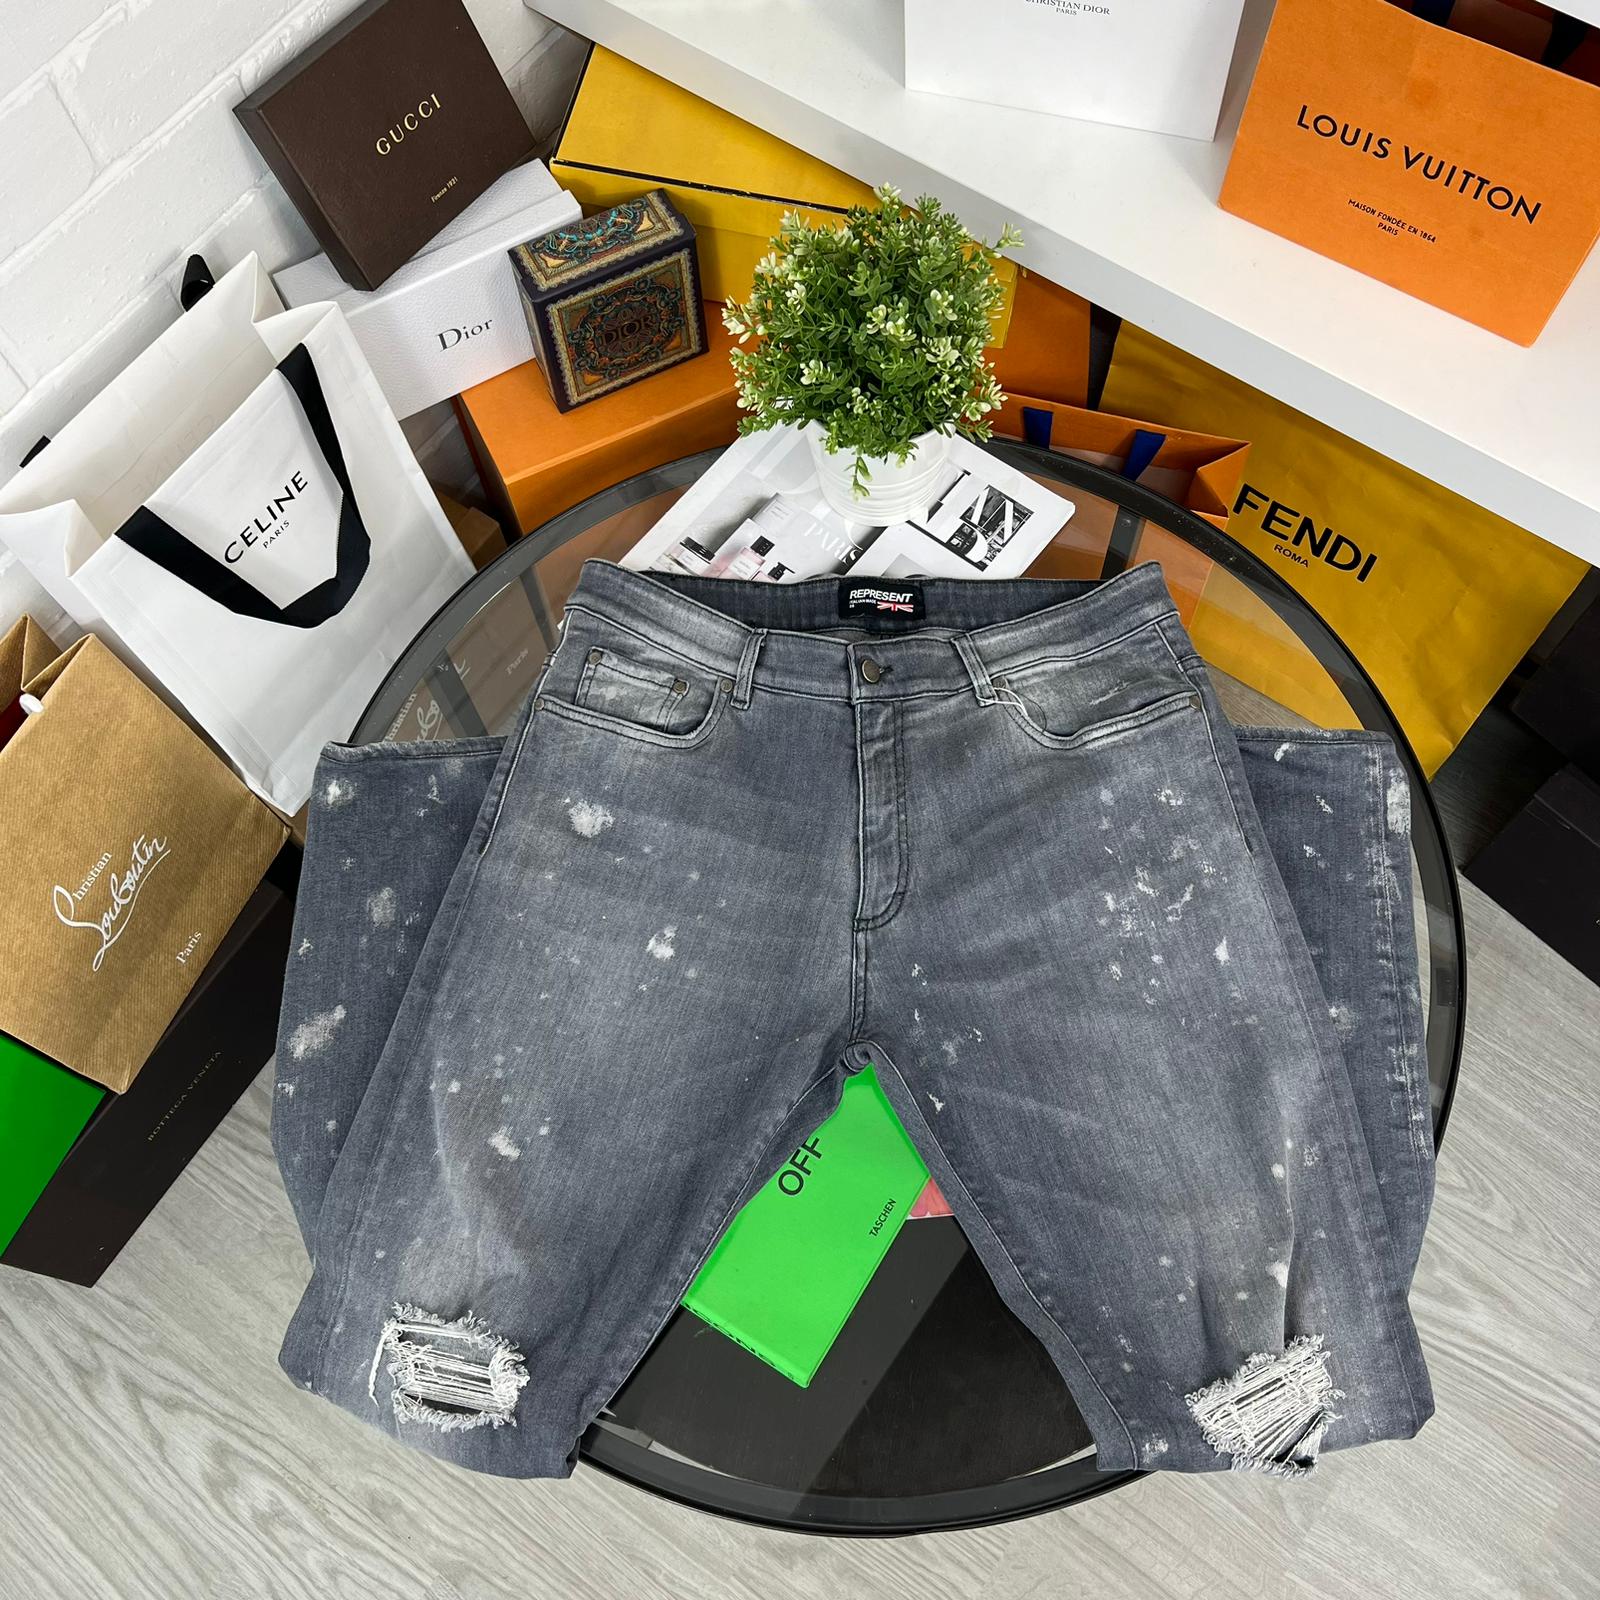 Louis Vuitton Paris jeans new with tags size waist 36